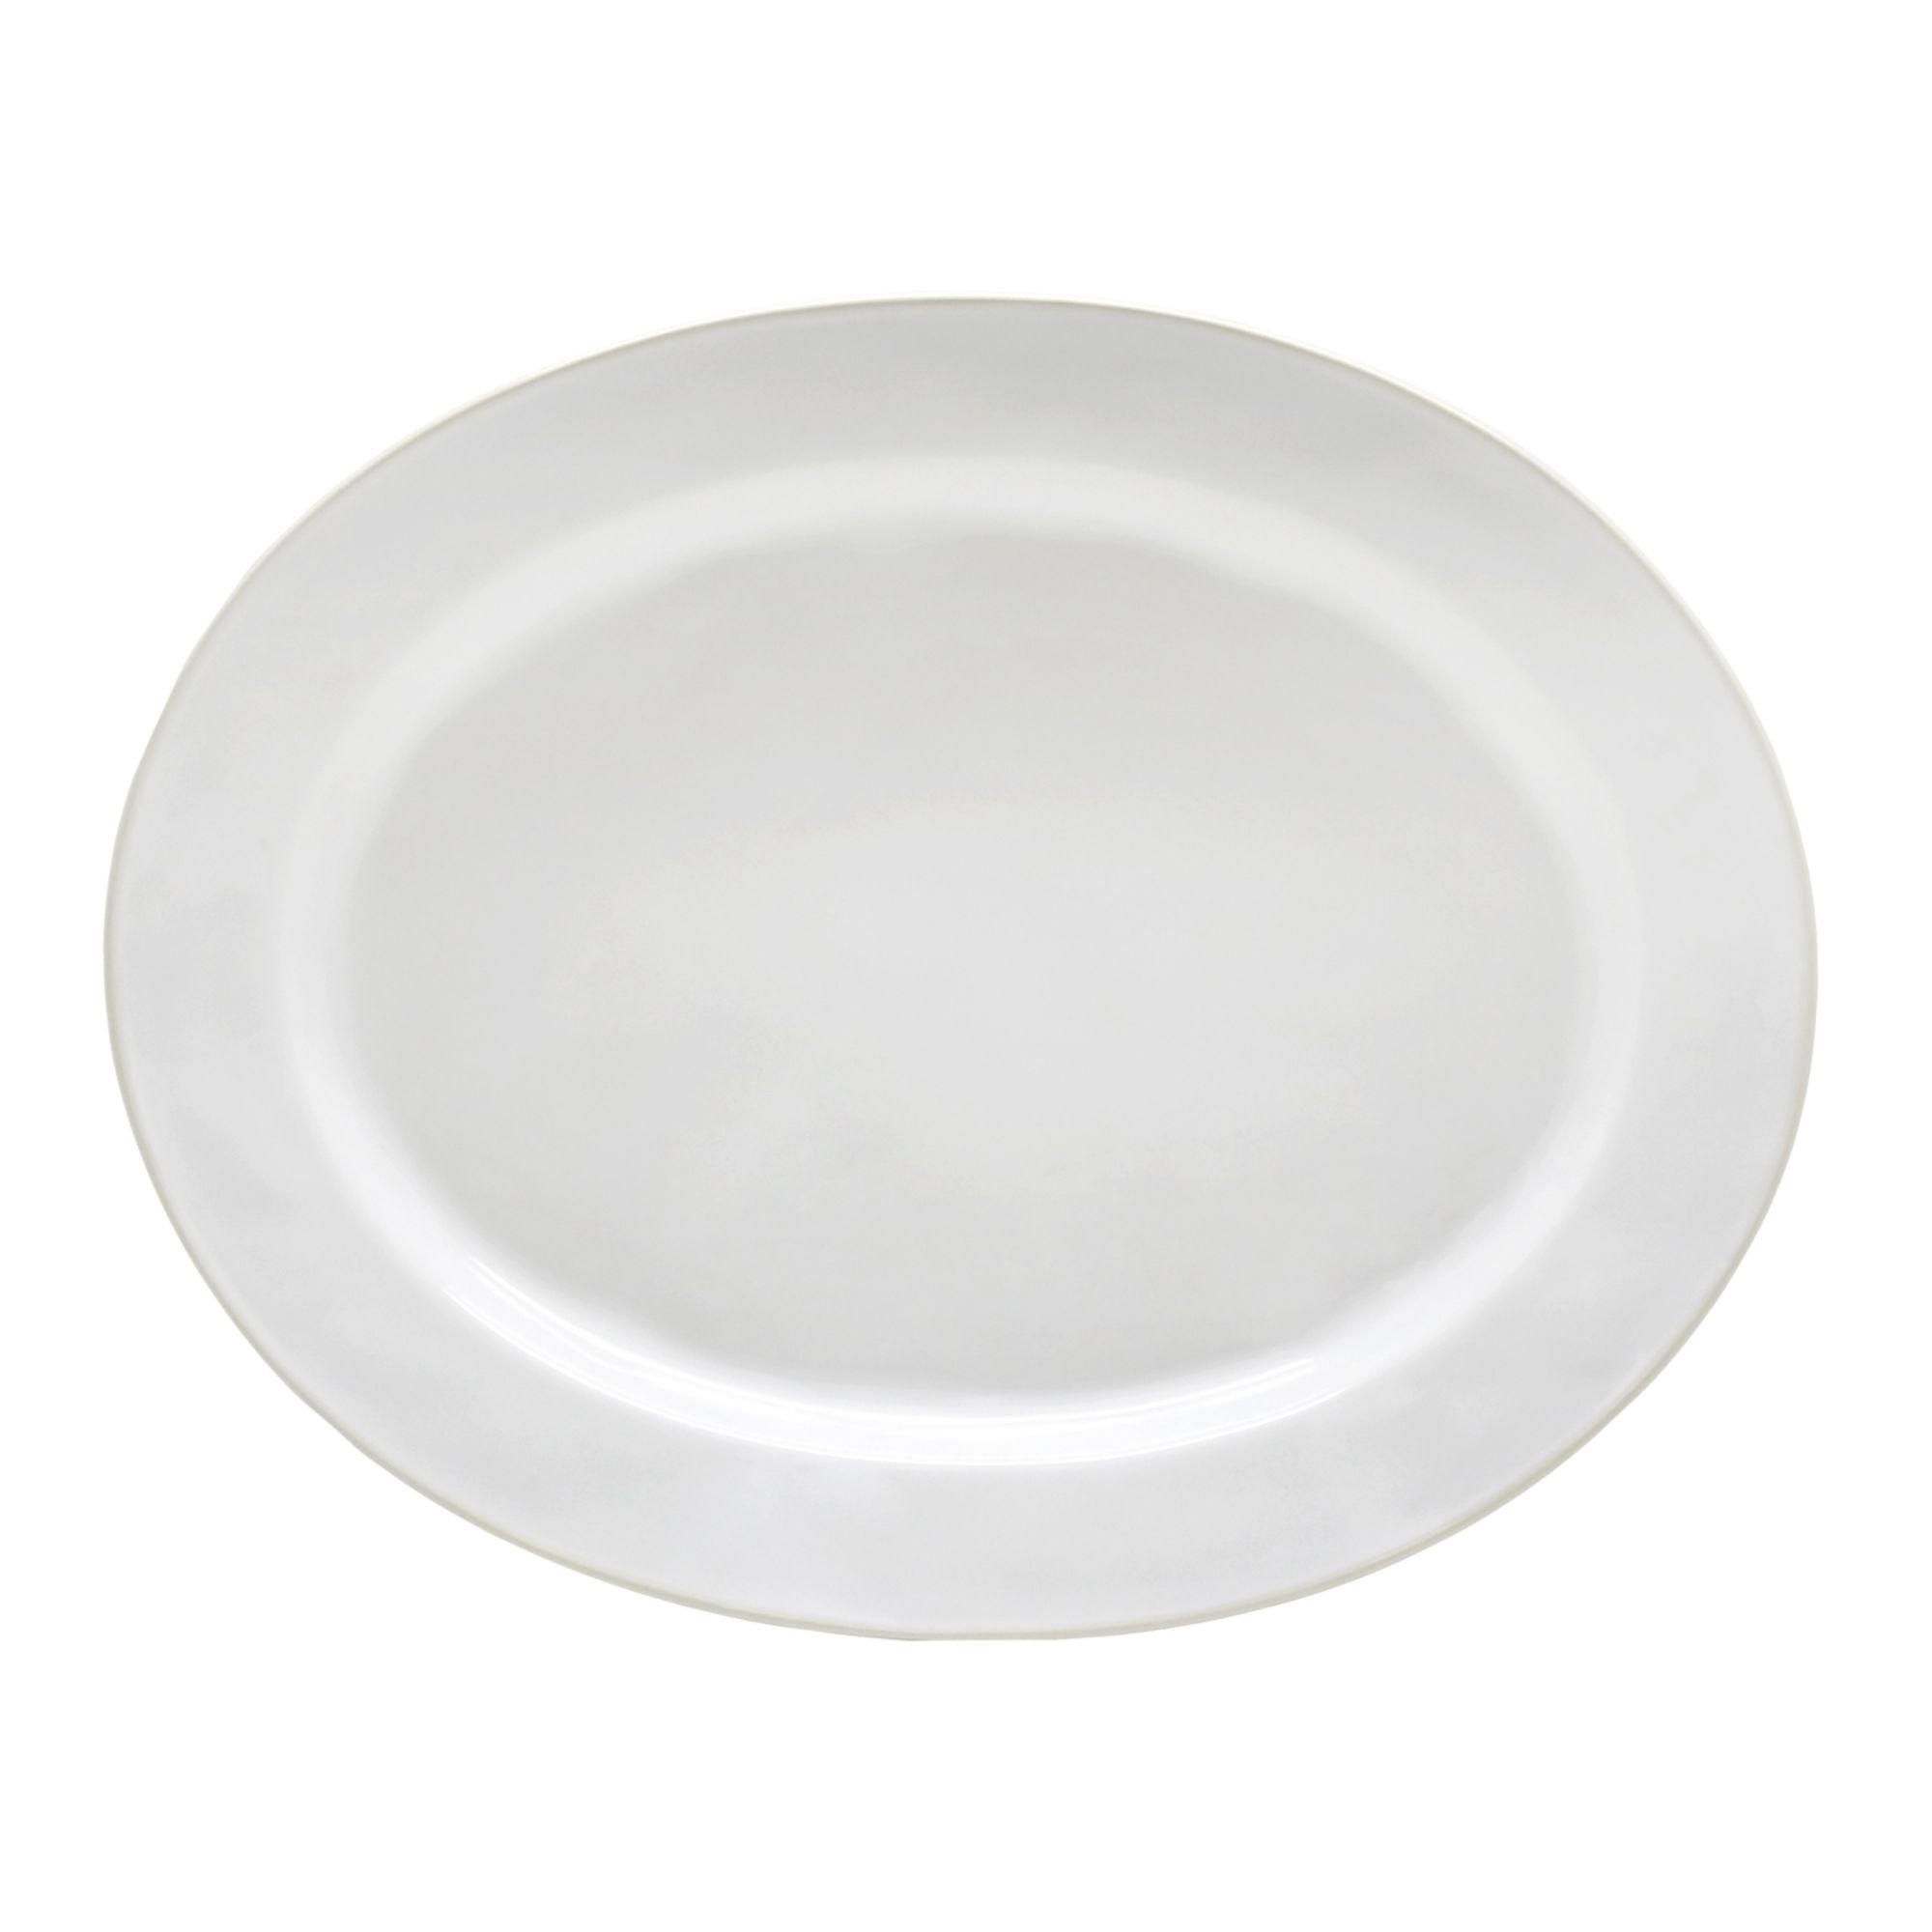 Beja Oval Platter 16" White-Cream